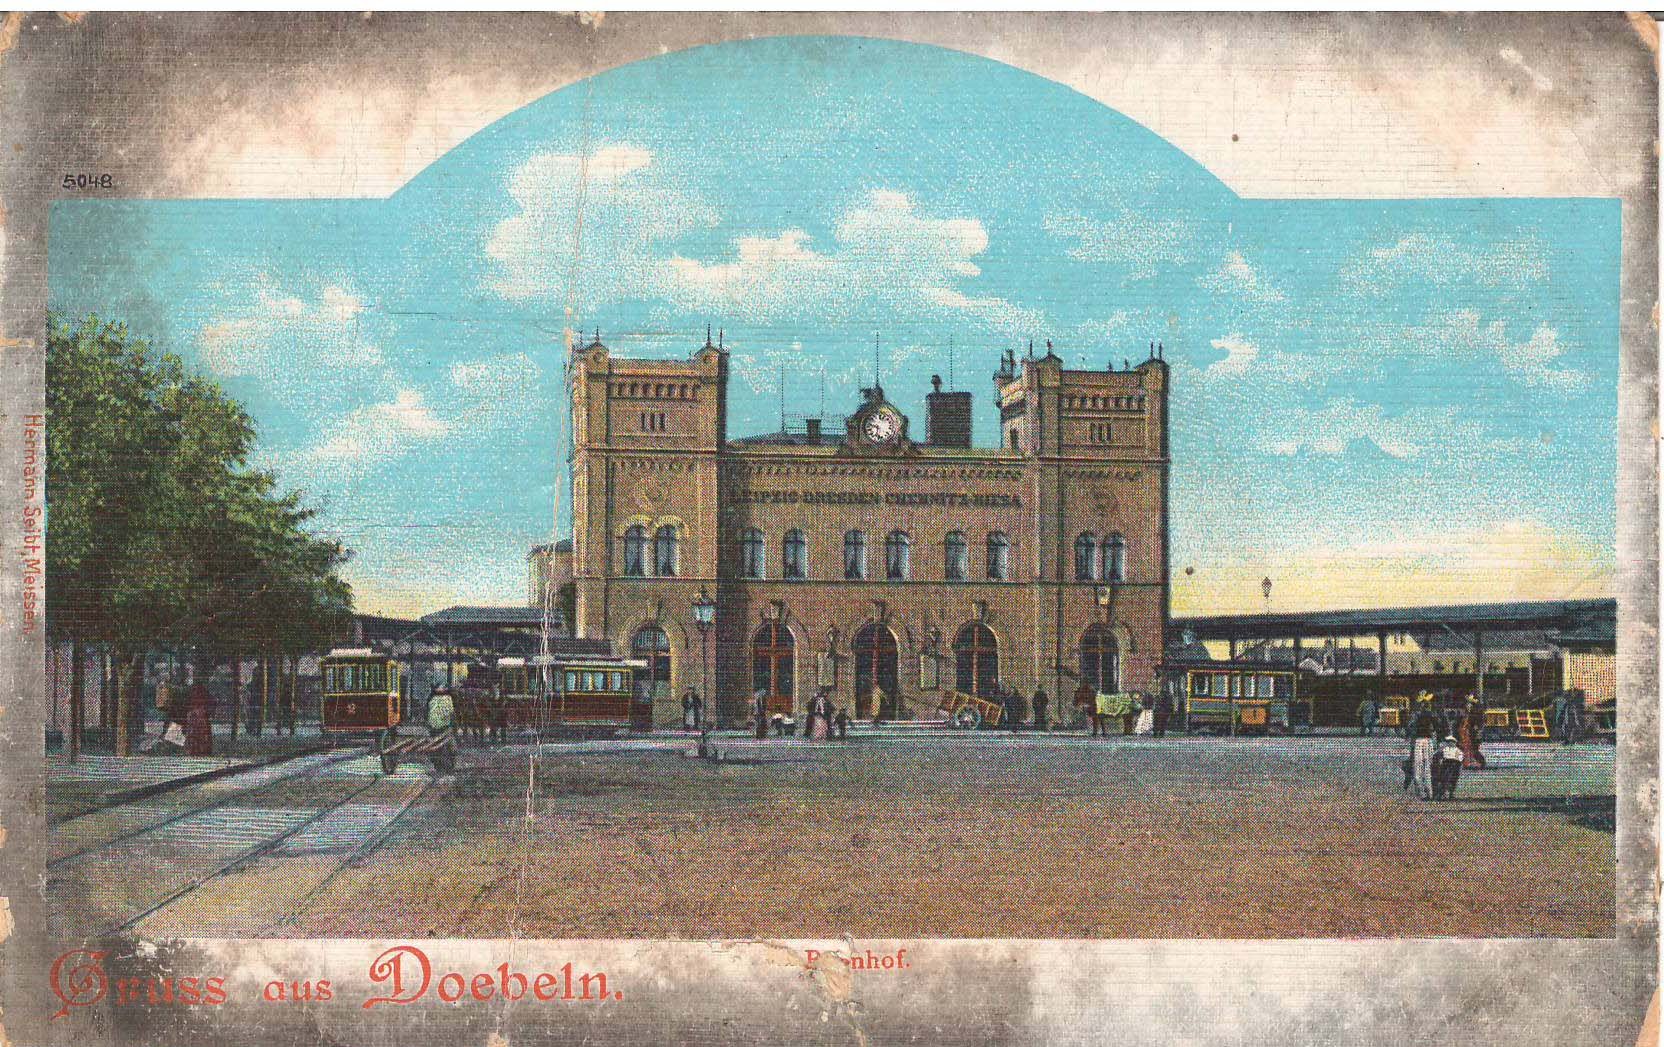 Ansichtspostkarte Döbeln: Gruß aus Döbeln - Bahnhof (Stadtmuseum / Kleine Galerie Döbeln CC BY-NC-SA)